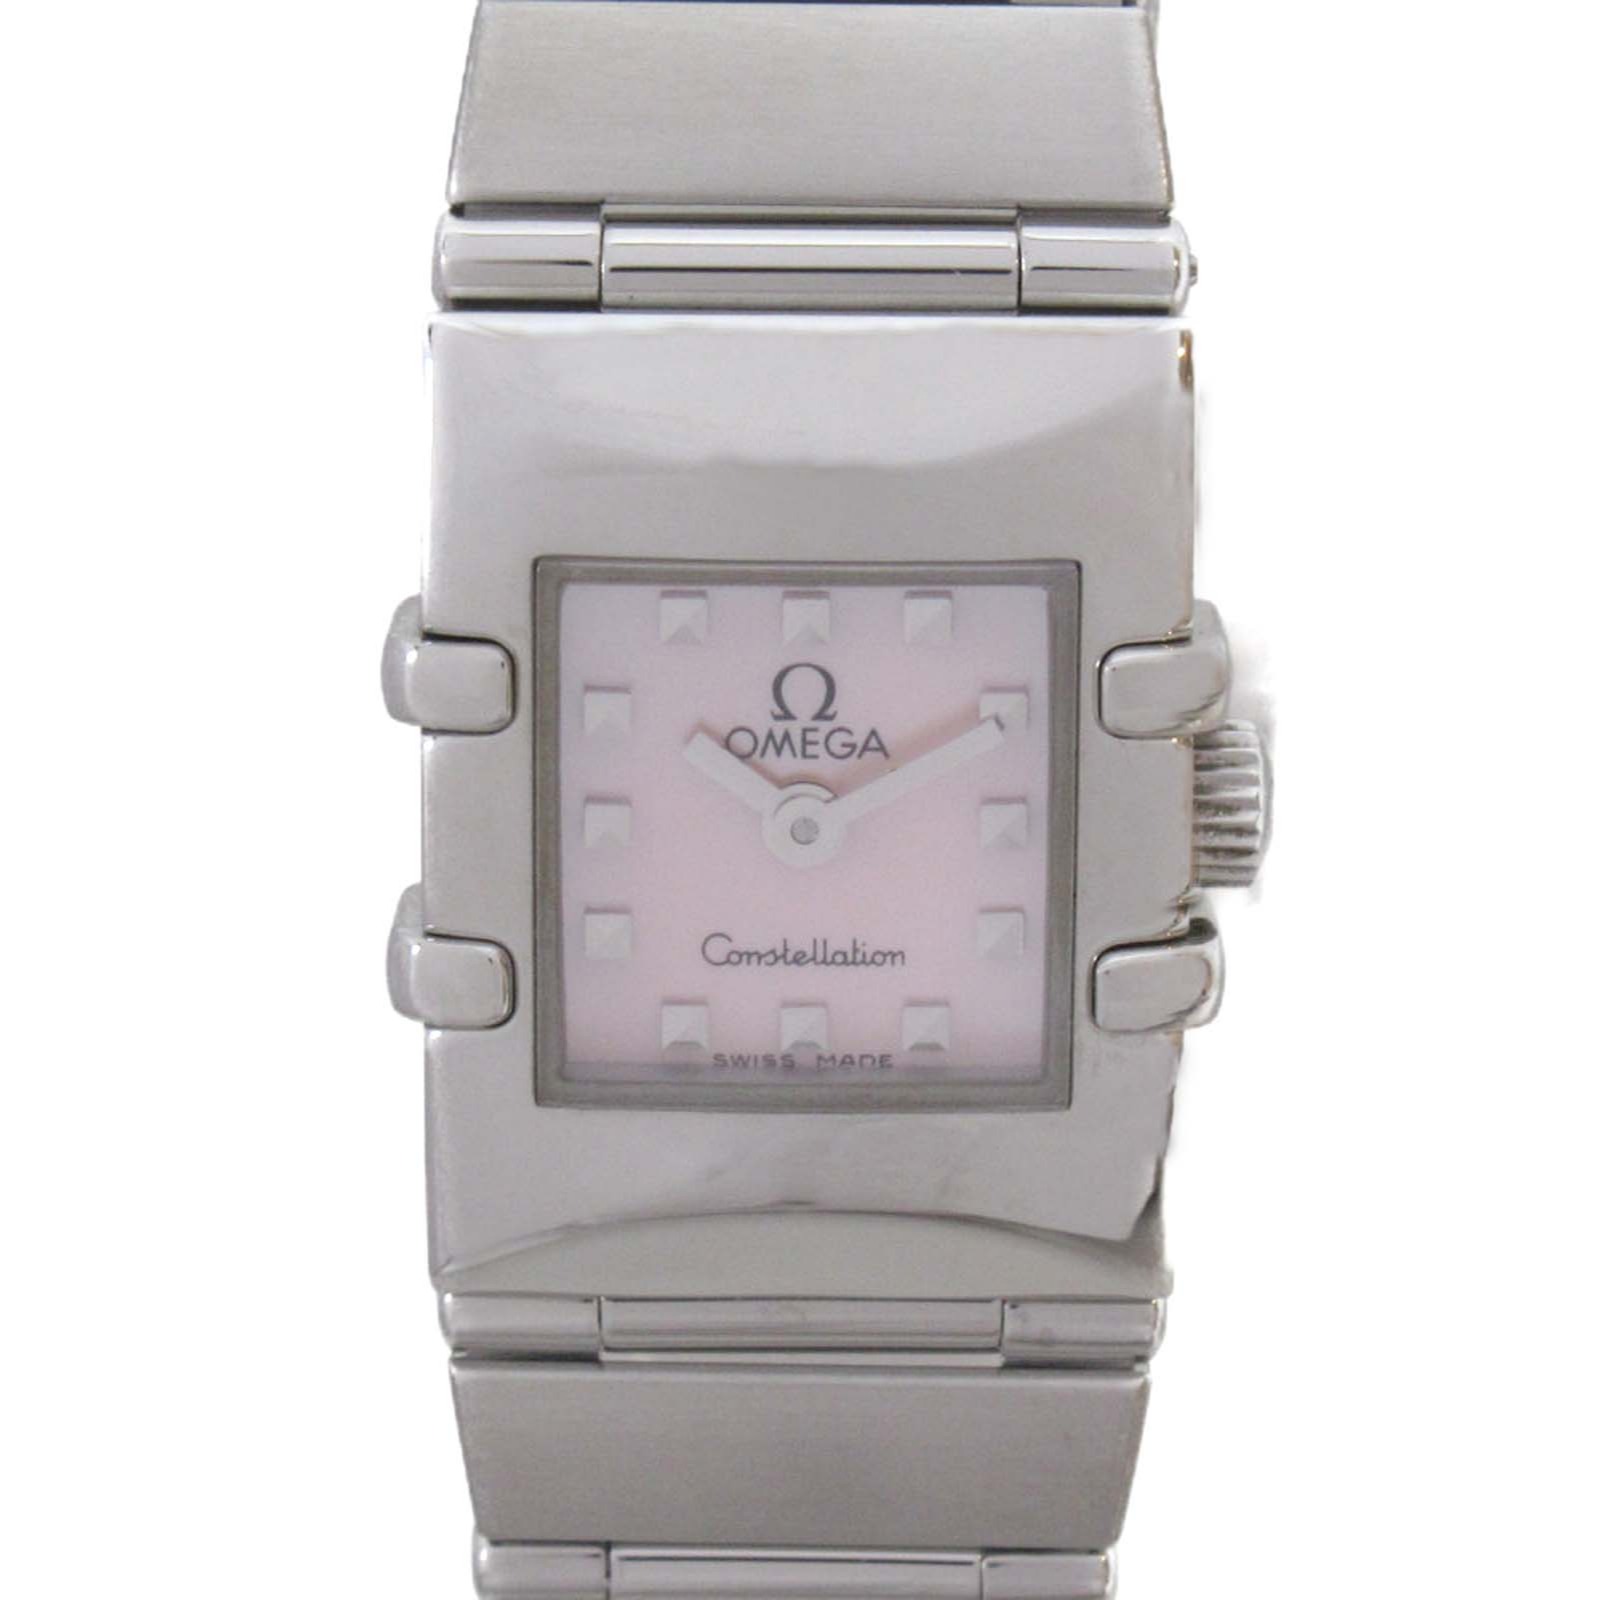 オメガ OMEGA コンステレーション カレ 腕時計 時計 ステンレススチール レディース ピンク系 ピンクシェル 1531.73 【中古】 | ブランド ブランド時計 ブランド腕時計 ウォッチ